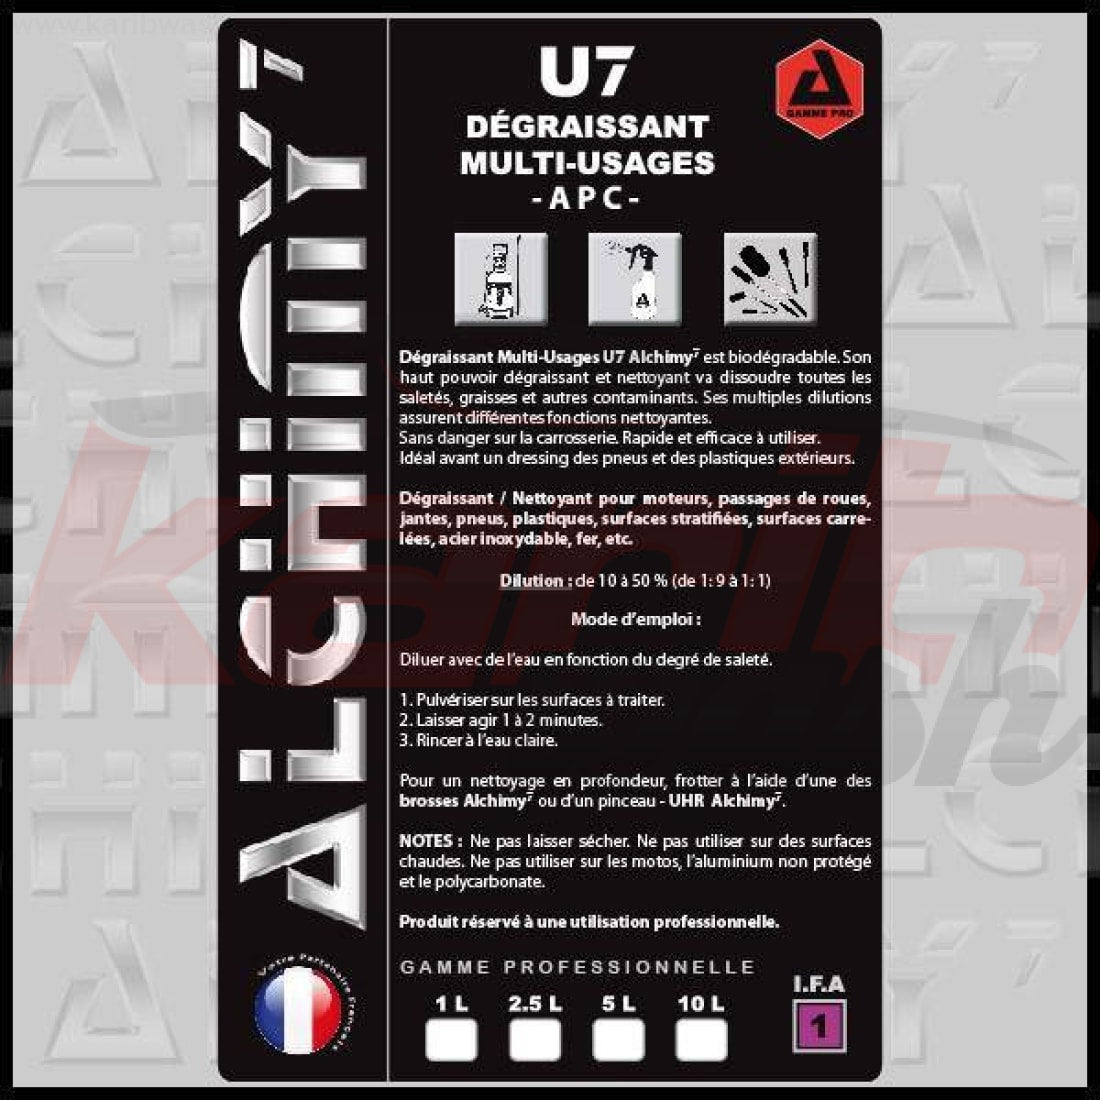 U7 Dégraissant Multi-Usages - ALCHIMY7 - KARIBWASH